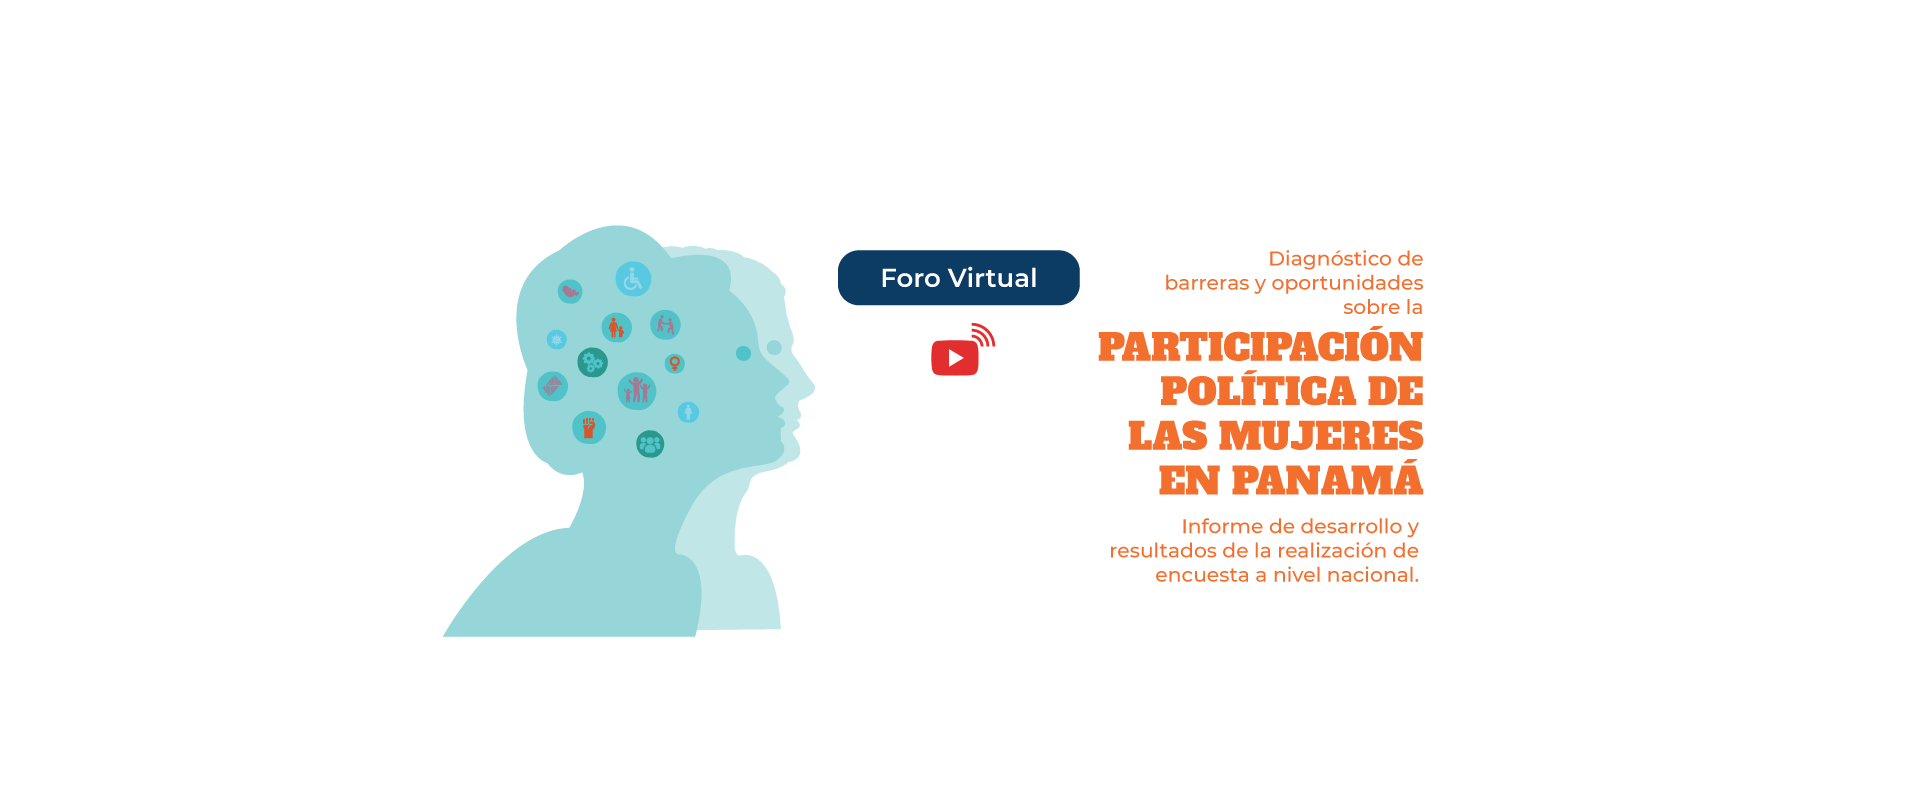 Diagnóstico de barreras y oportunidades para la participación política de las mujeres en Panamá